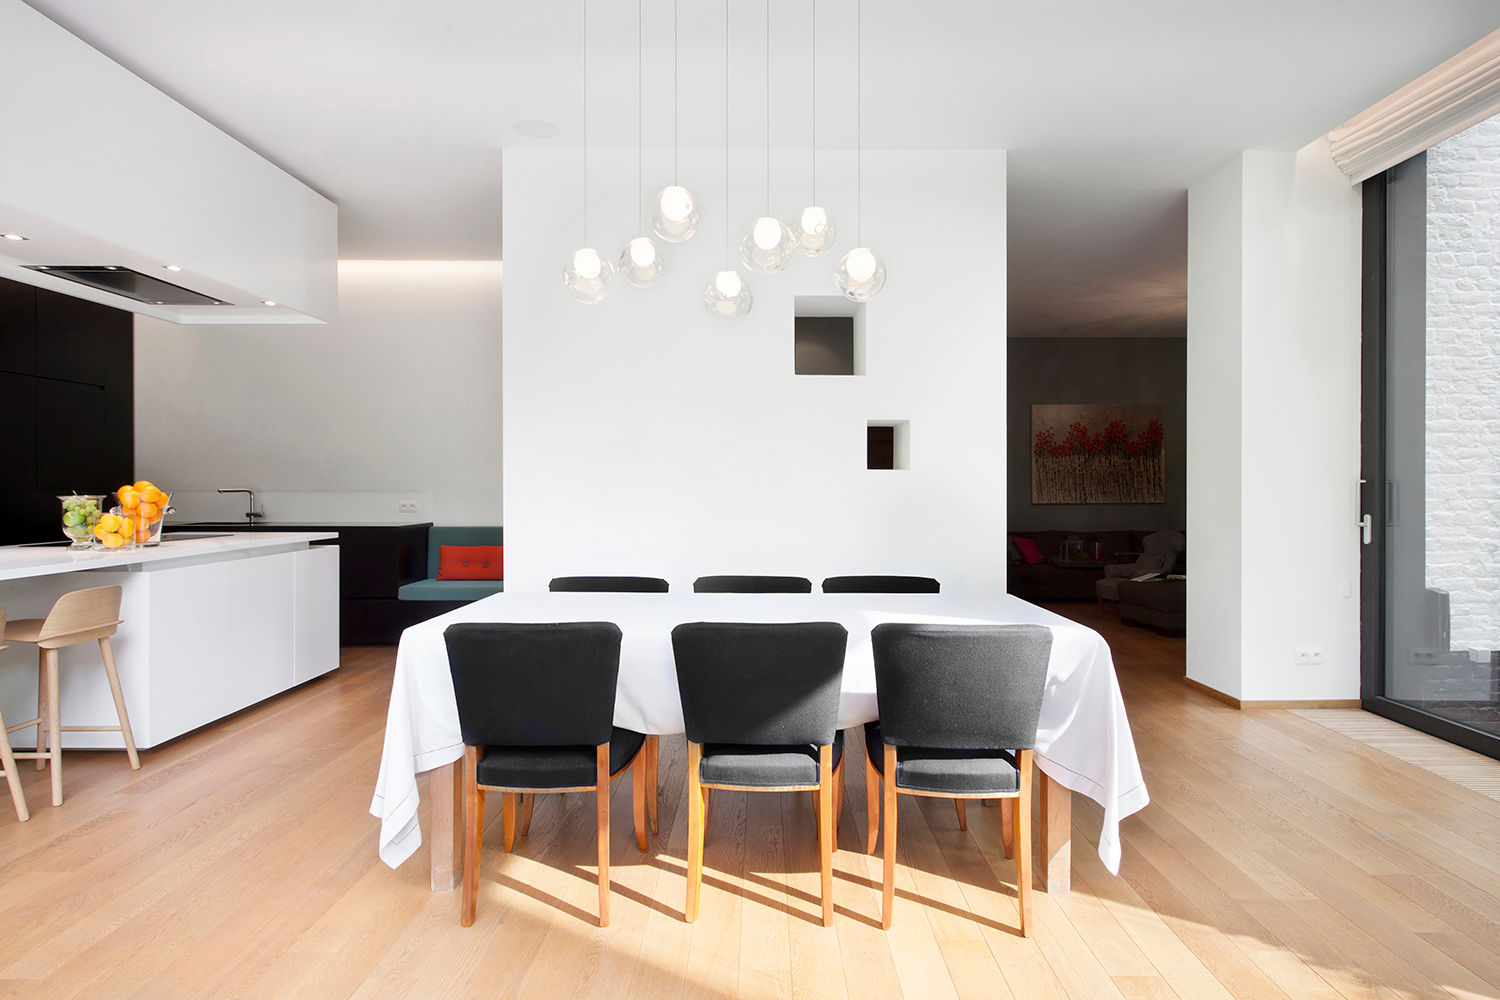 Living rooms reinterpreted, Olivier Vitry Architecture Olivier Vitry Architecture Будинки